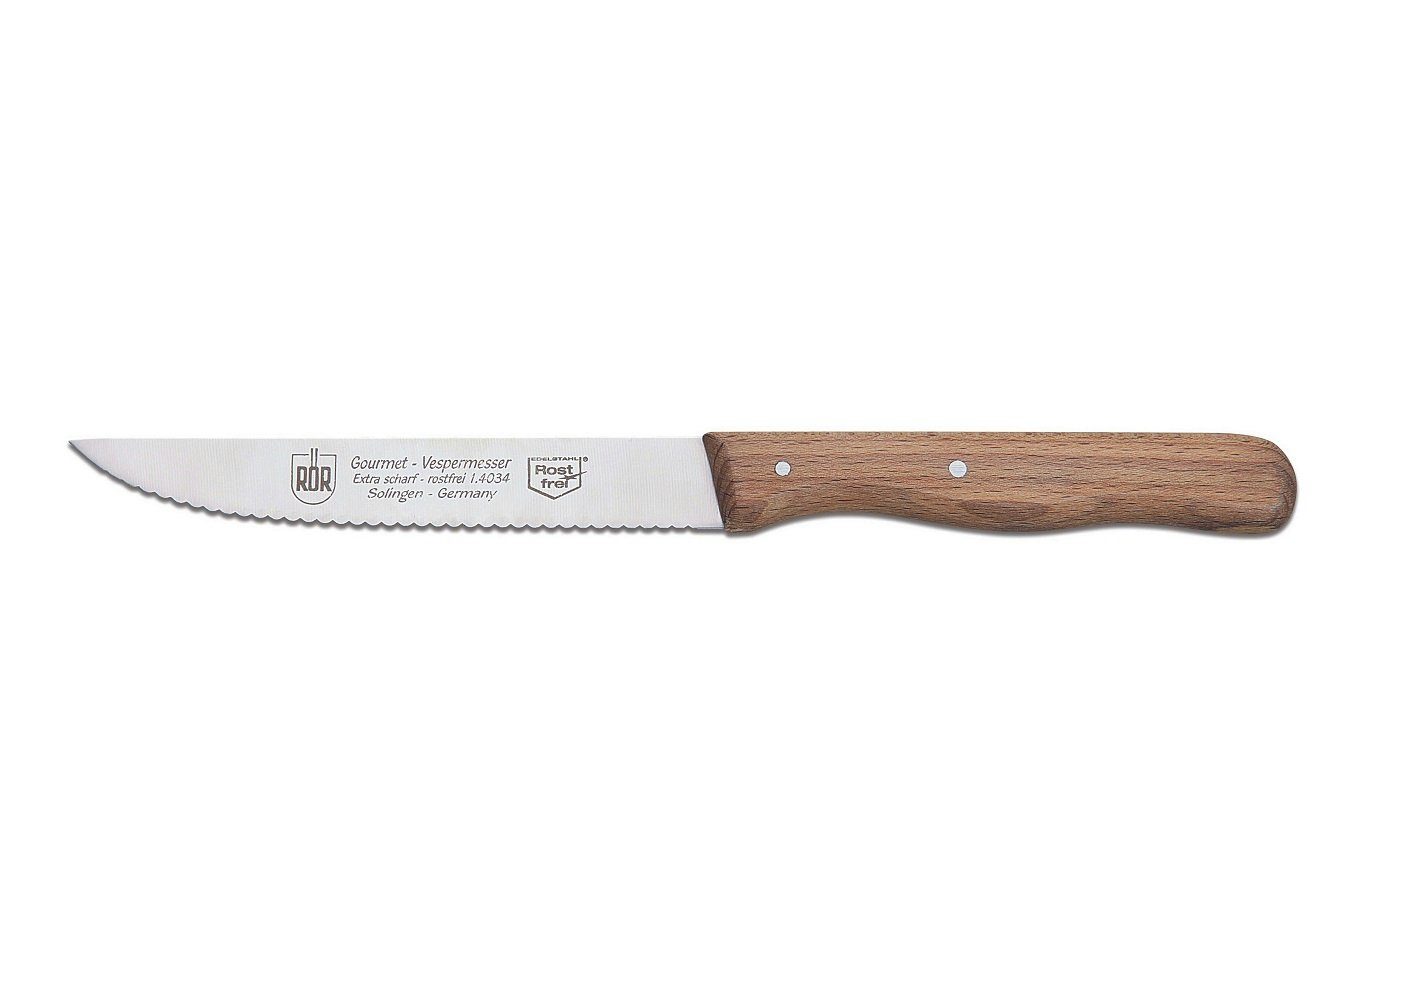 RÖR Brotmesser 10173, Vespermesser mit Buchenholzgriff, das perfekte Besteck zu jedem Anlass - Made in Solingen